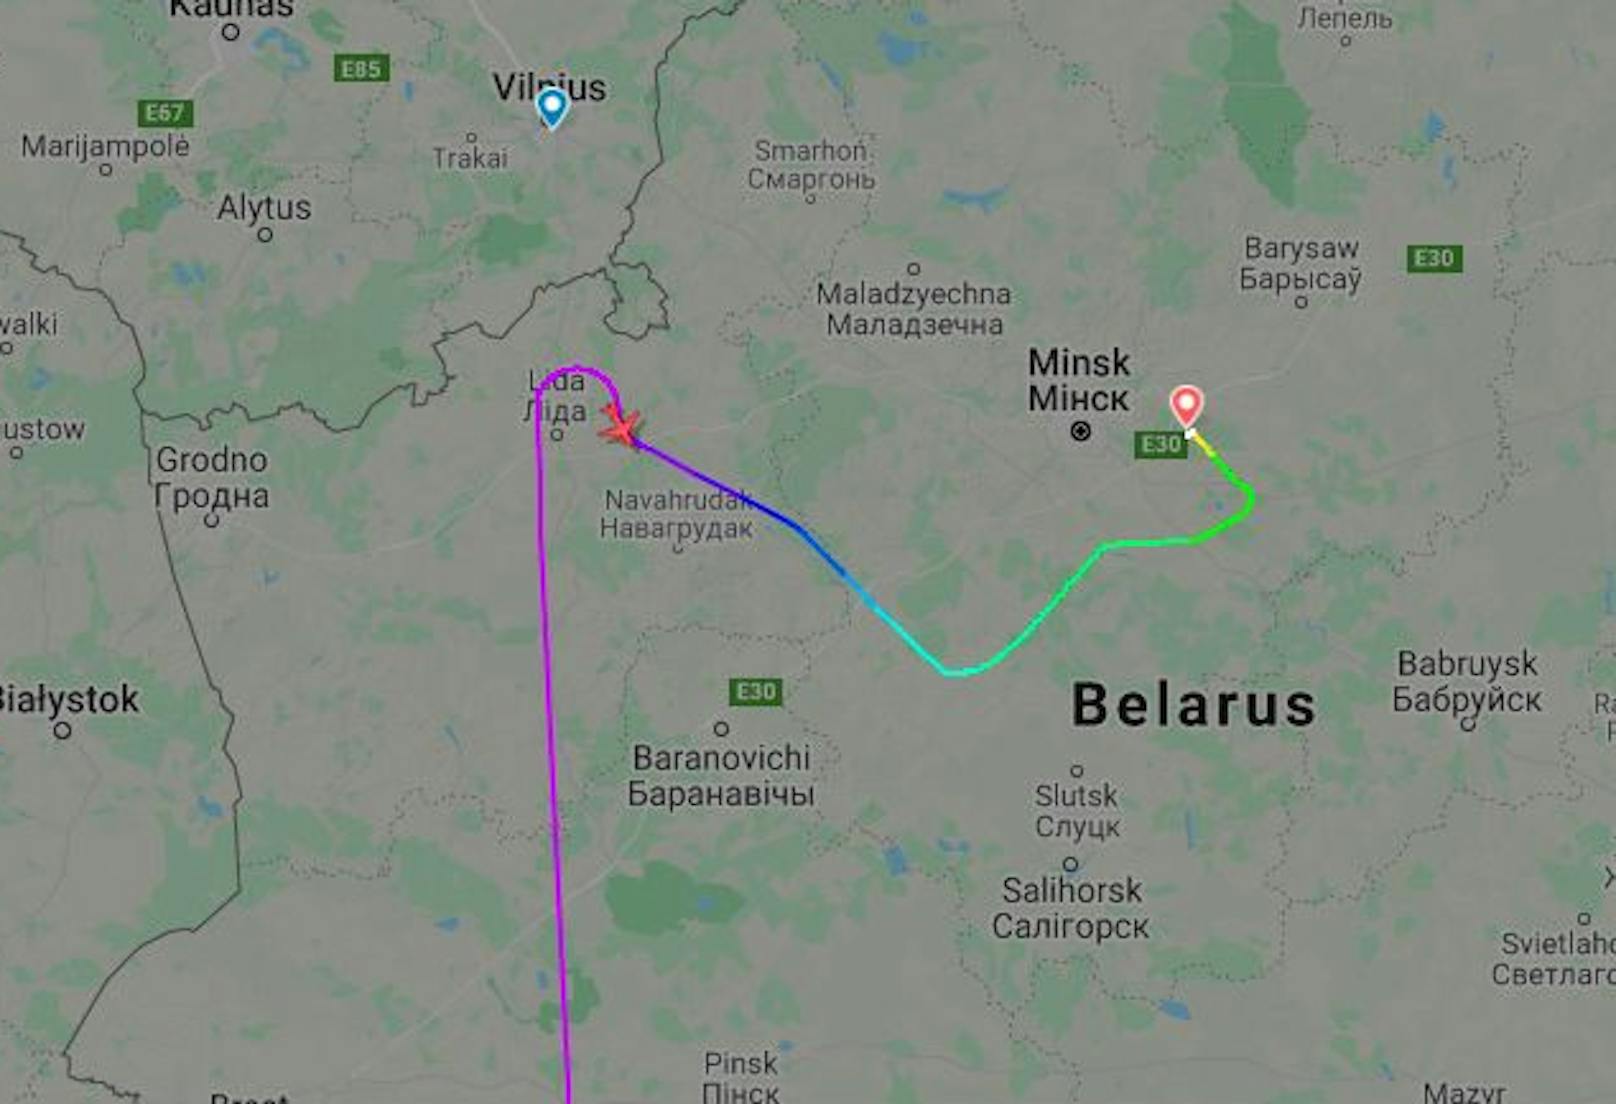 Flug FR4978 wurde zur Landung in Minsk gezwungen.